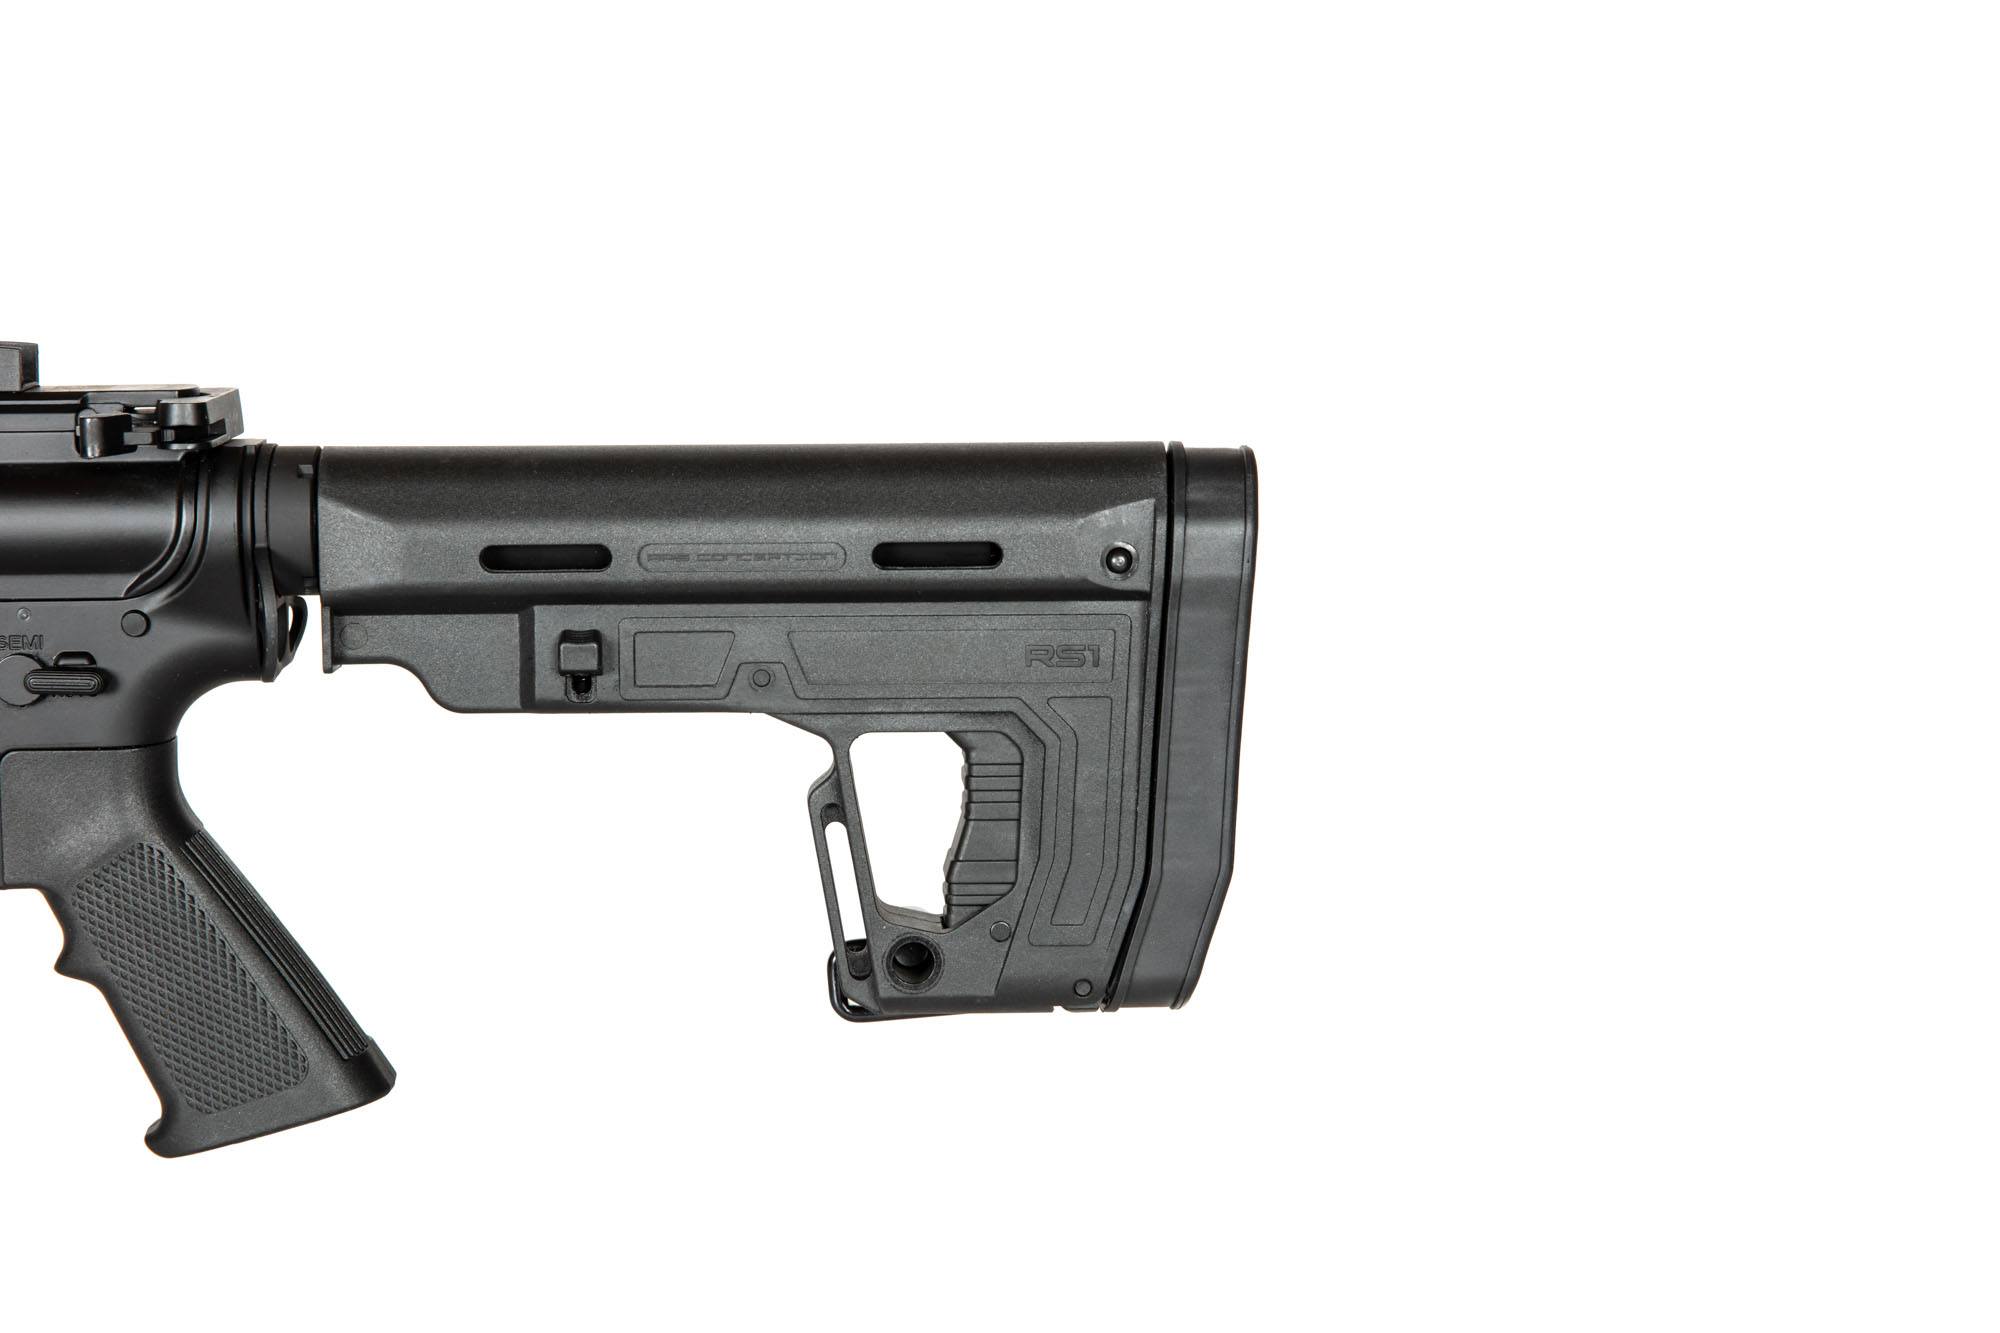 ASR117R1 BOAR Carbine Rifle Black